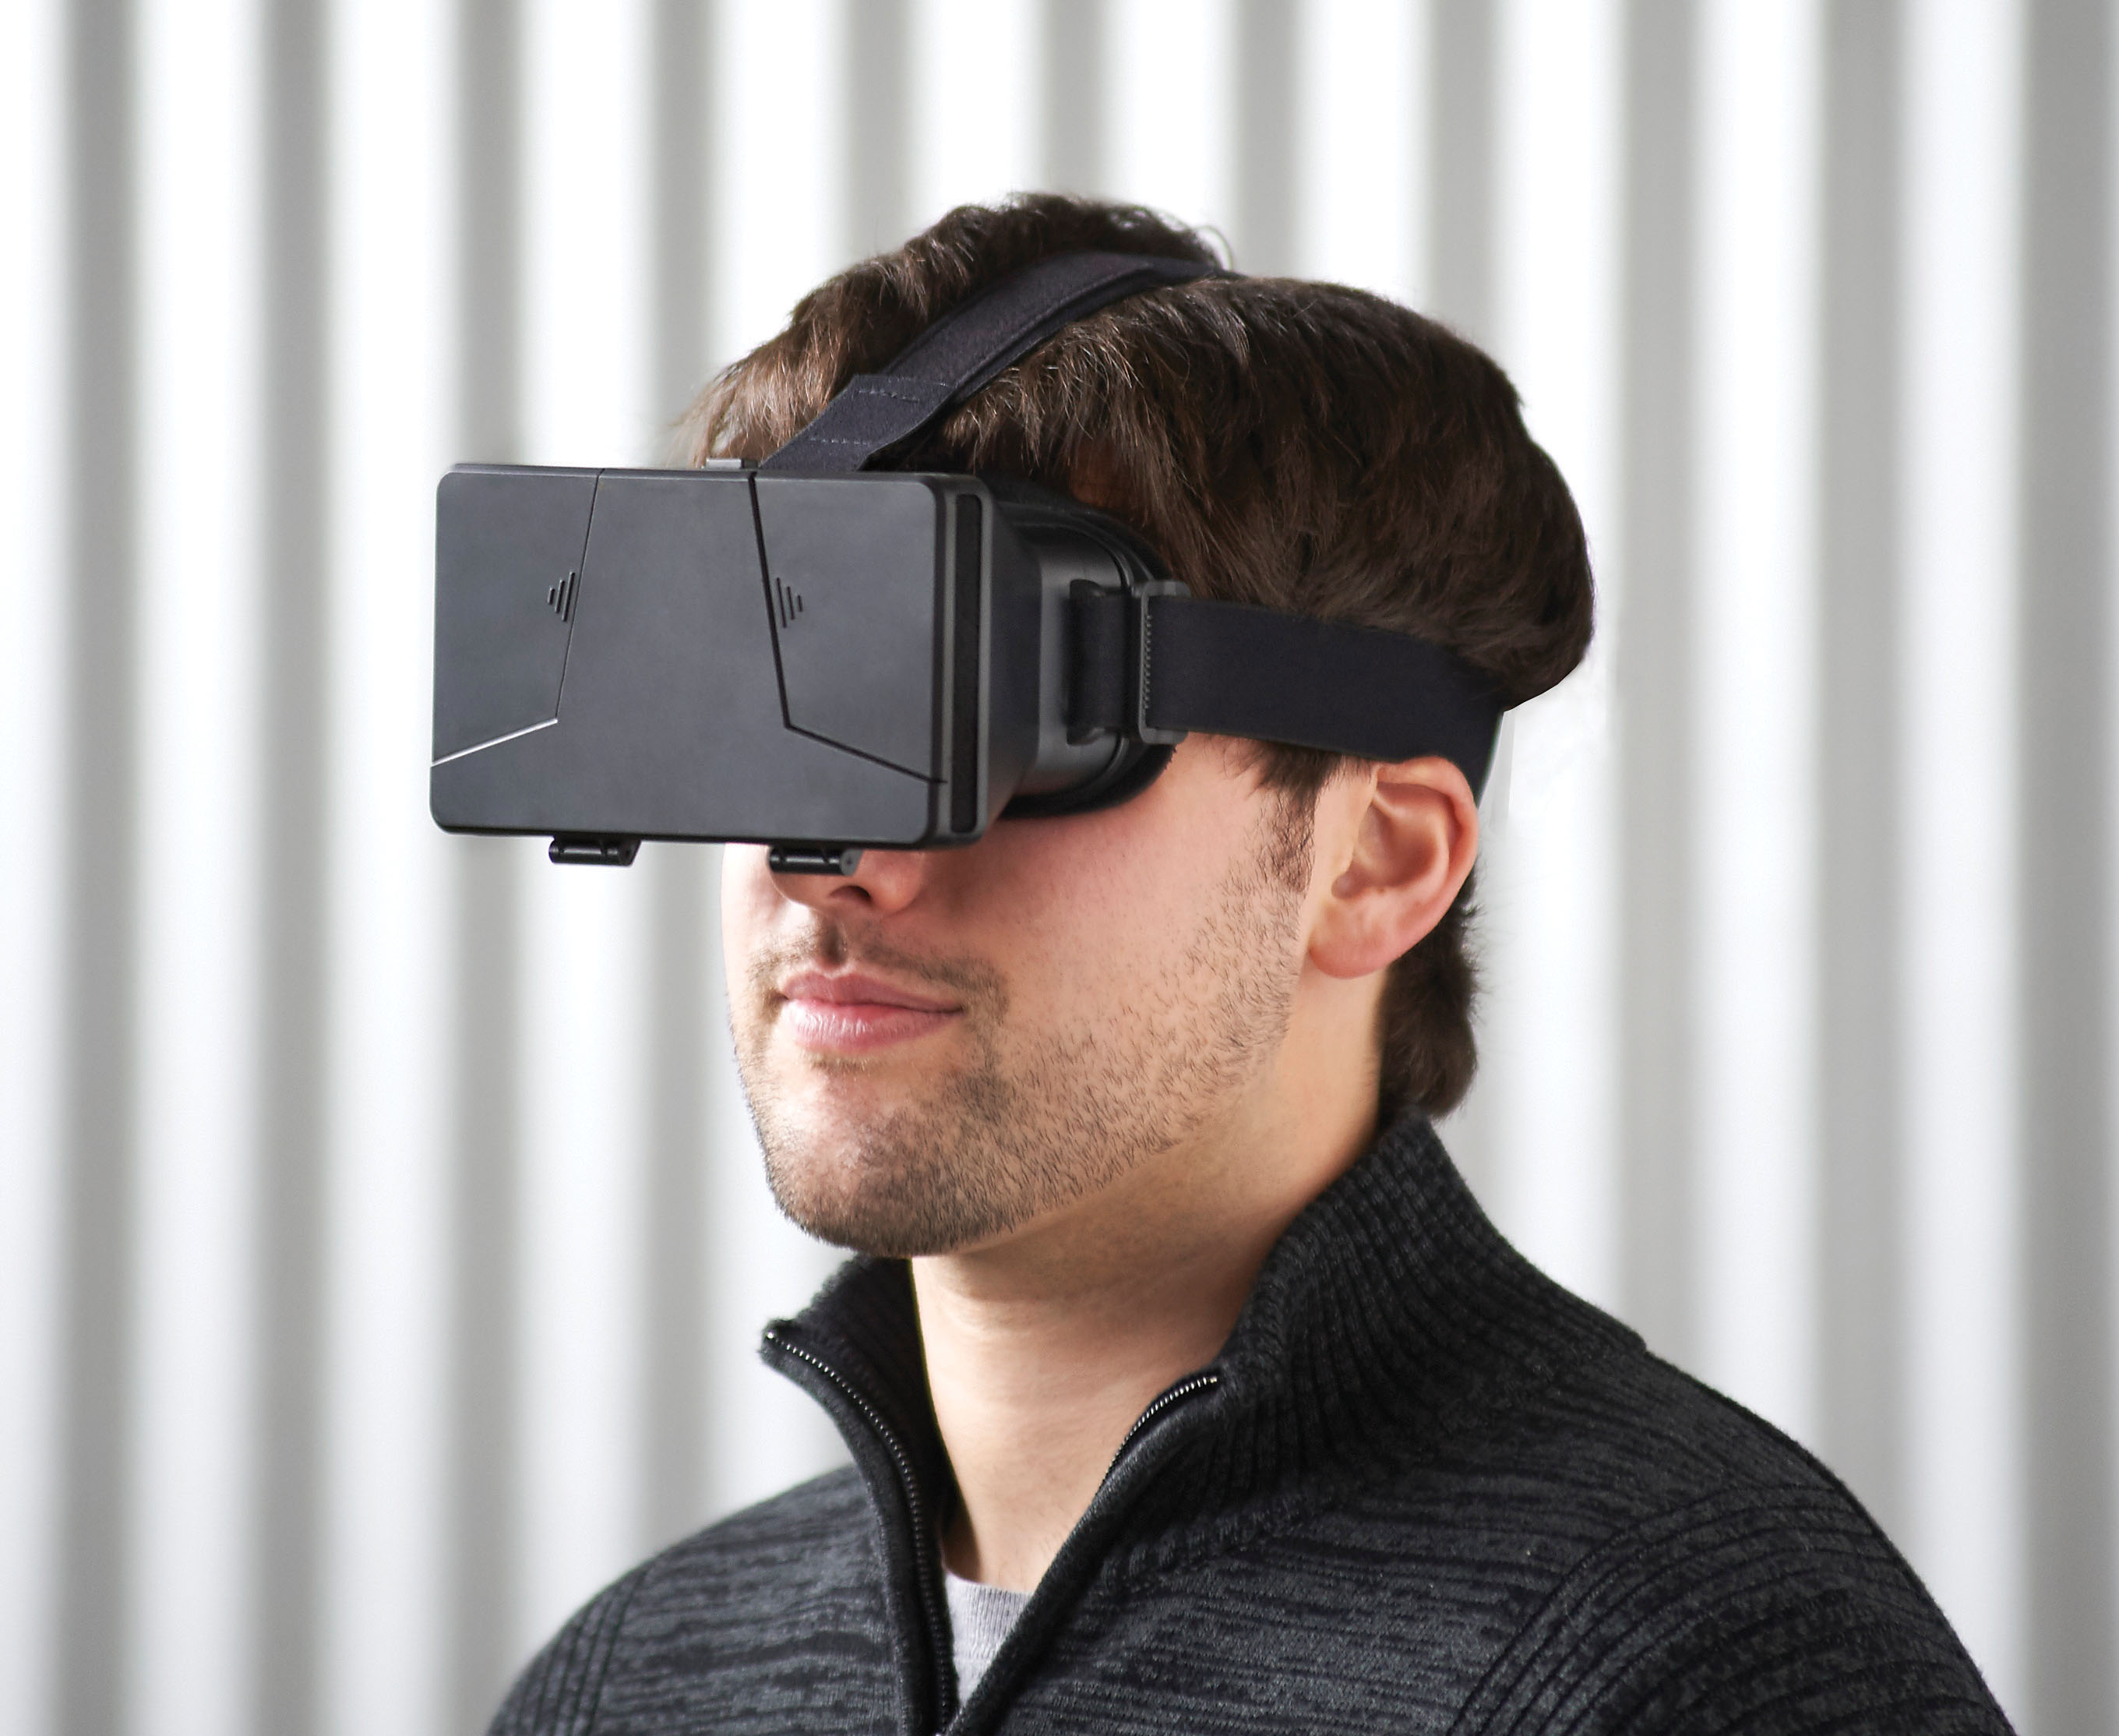 Страшные виртуальные очки реальности